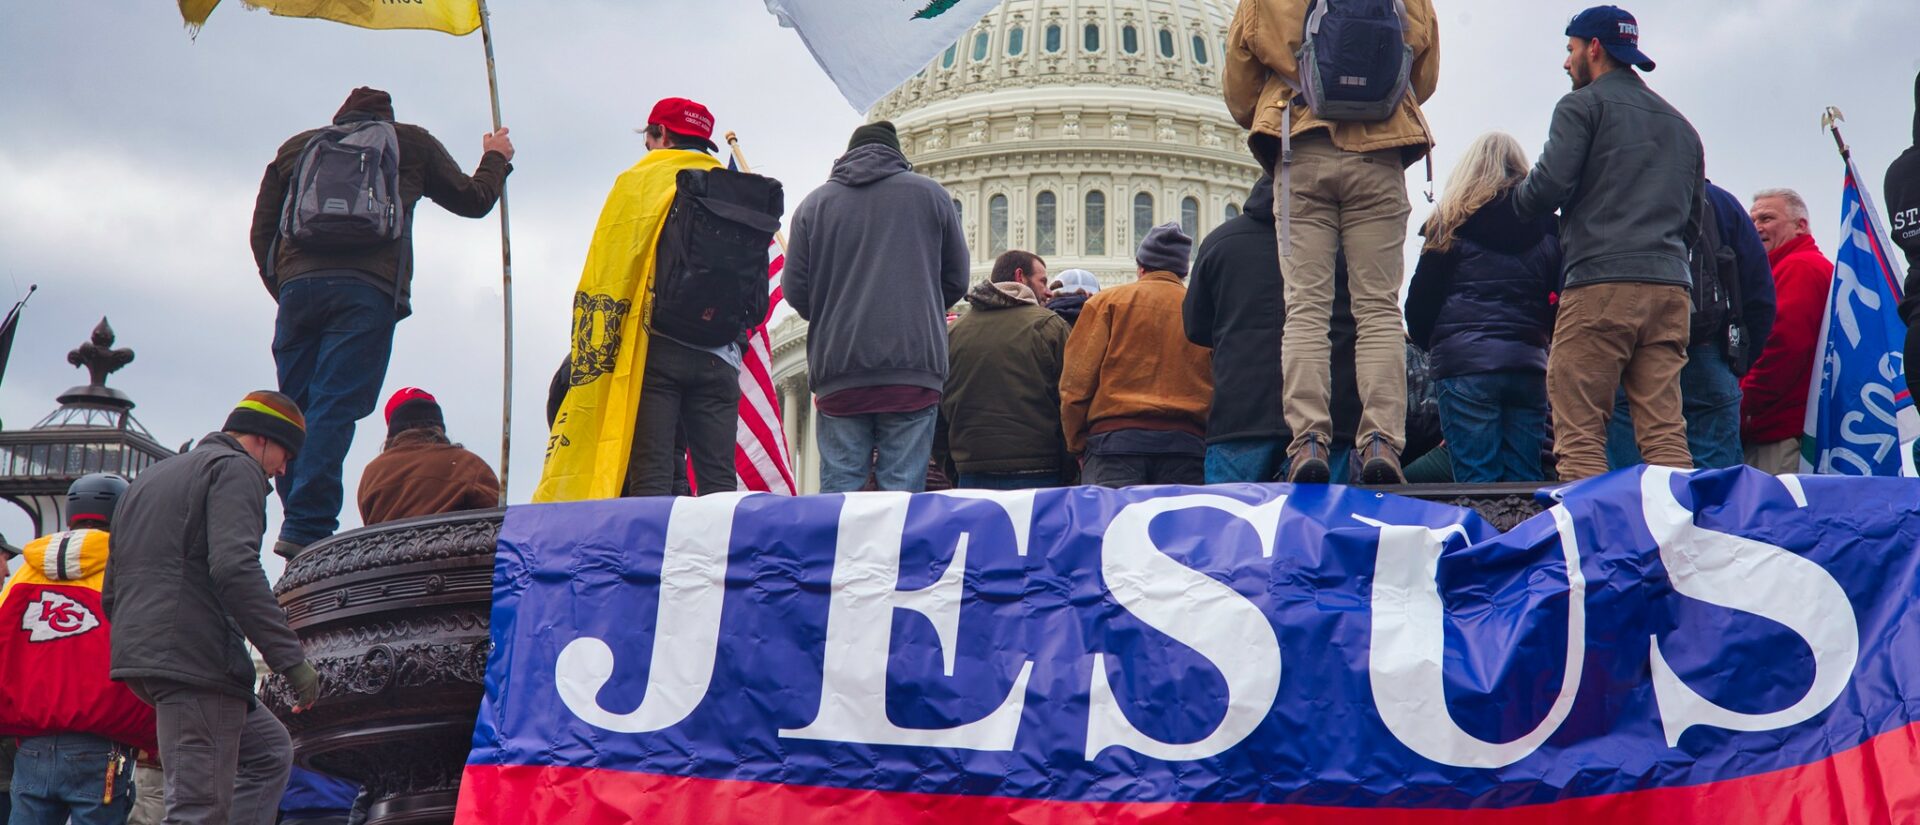 Certains manifestants du Capitole arboraient des slogans mentionnant Jésus | © Brett Davis/Flickr/CC BY-NC 2.0